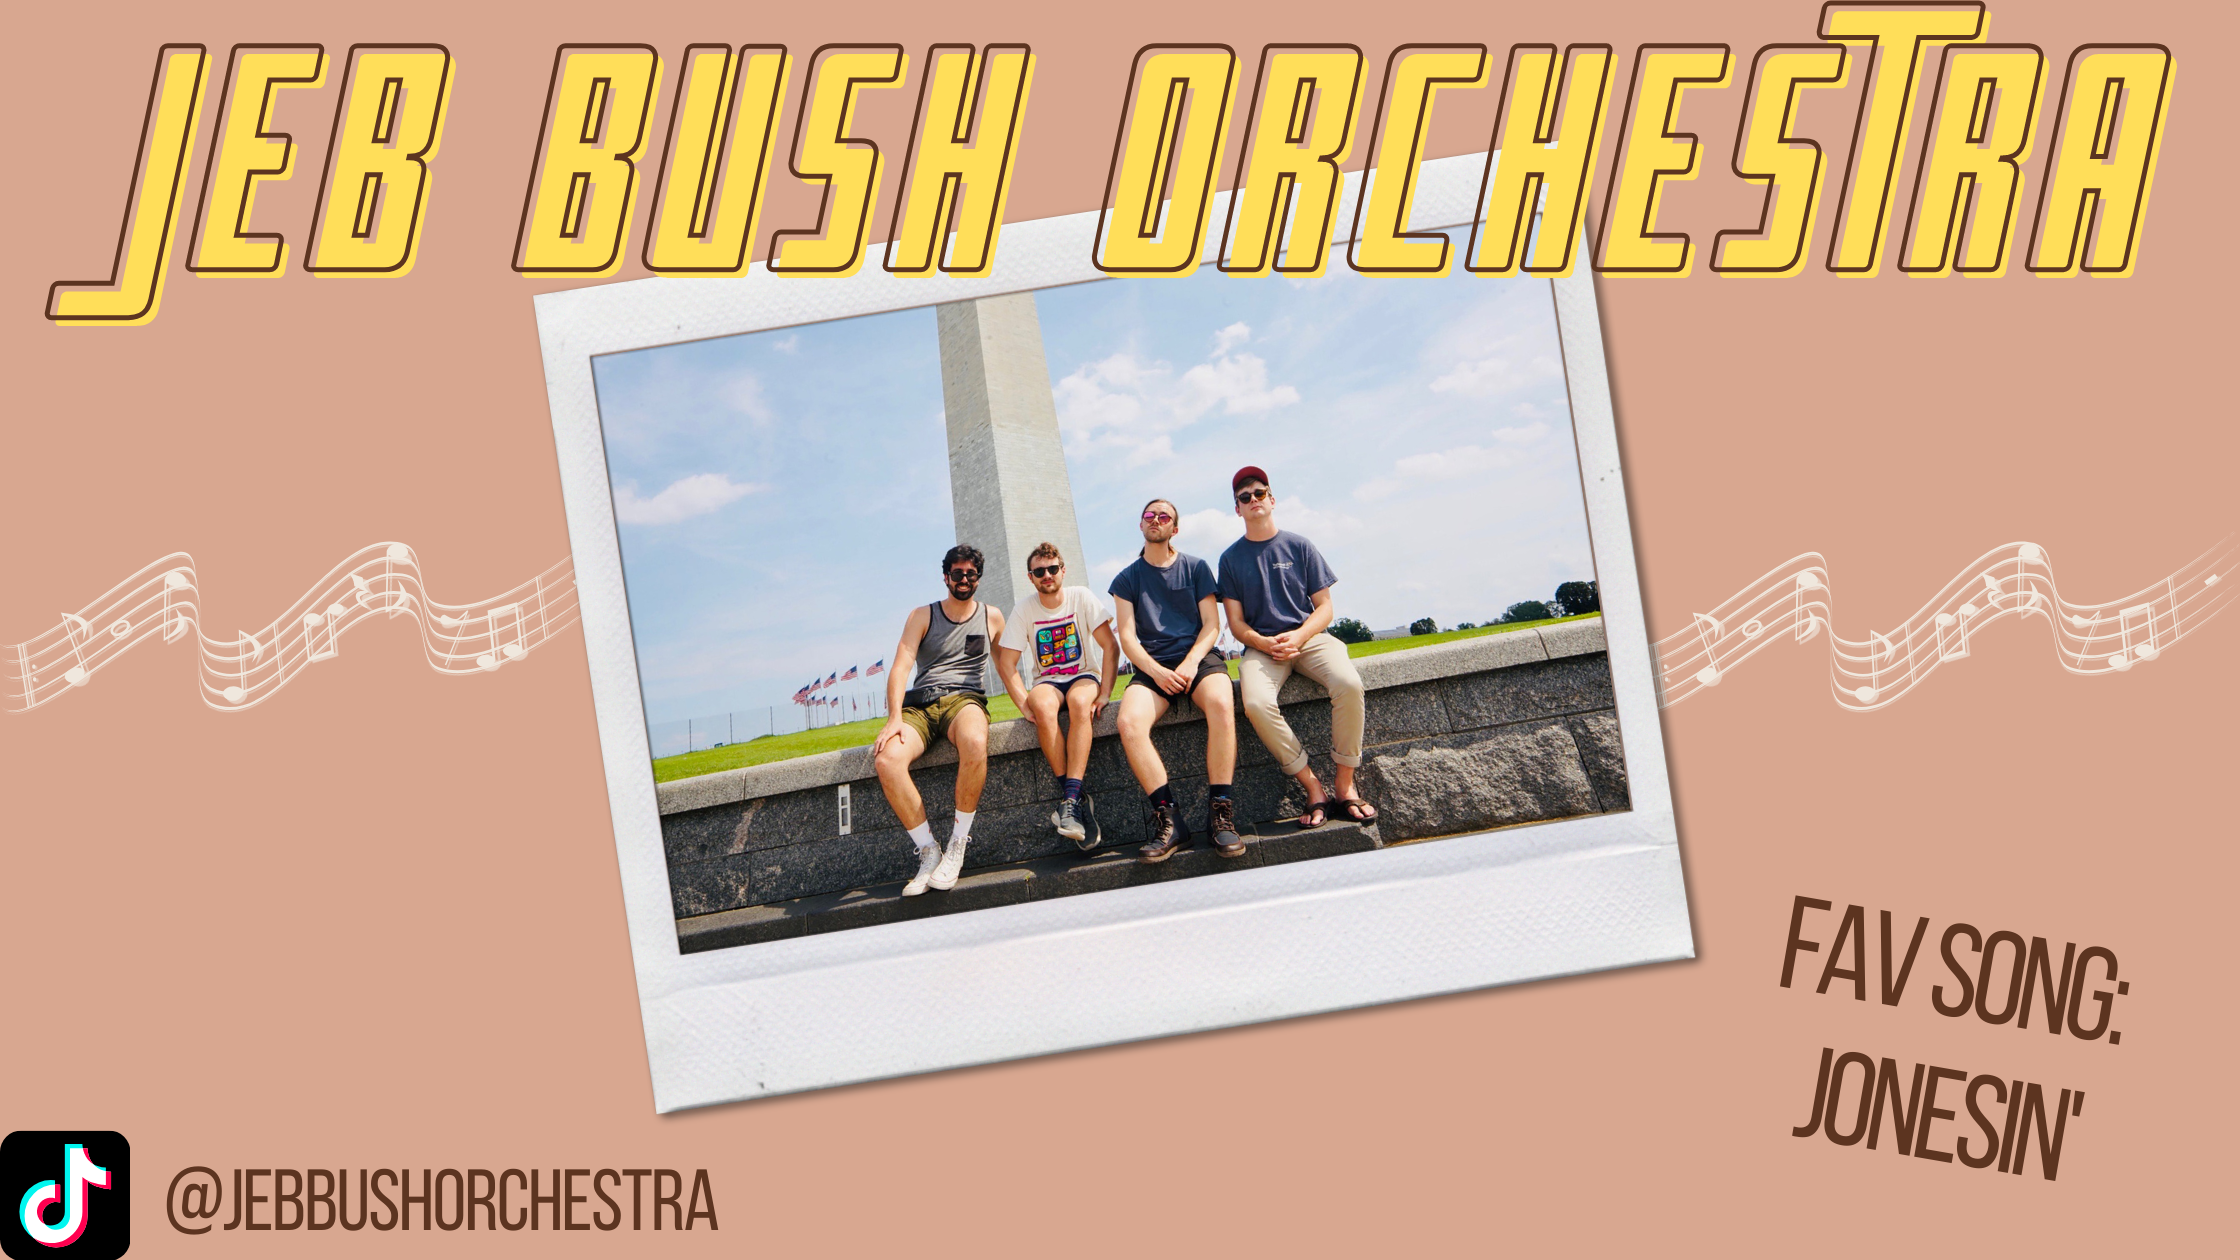 Bush orchestra jeb JEB BUSH